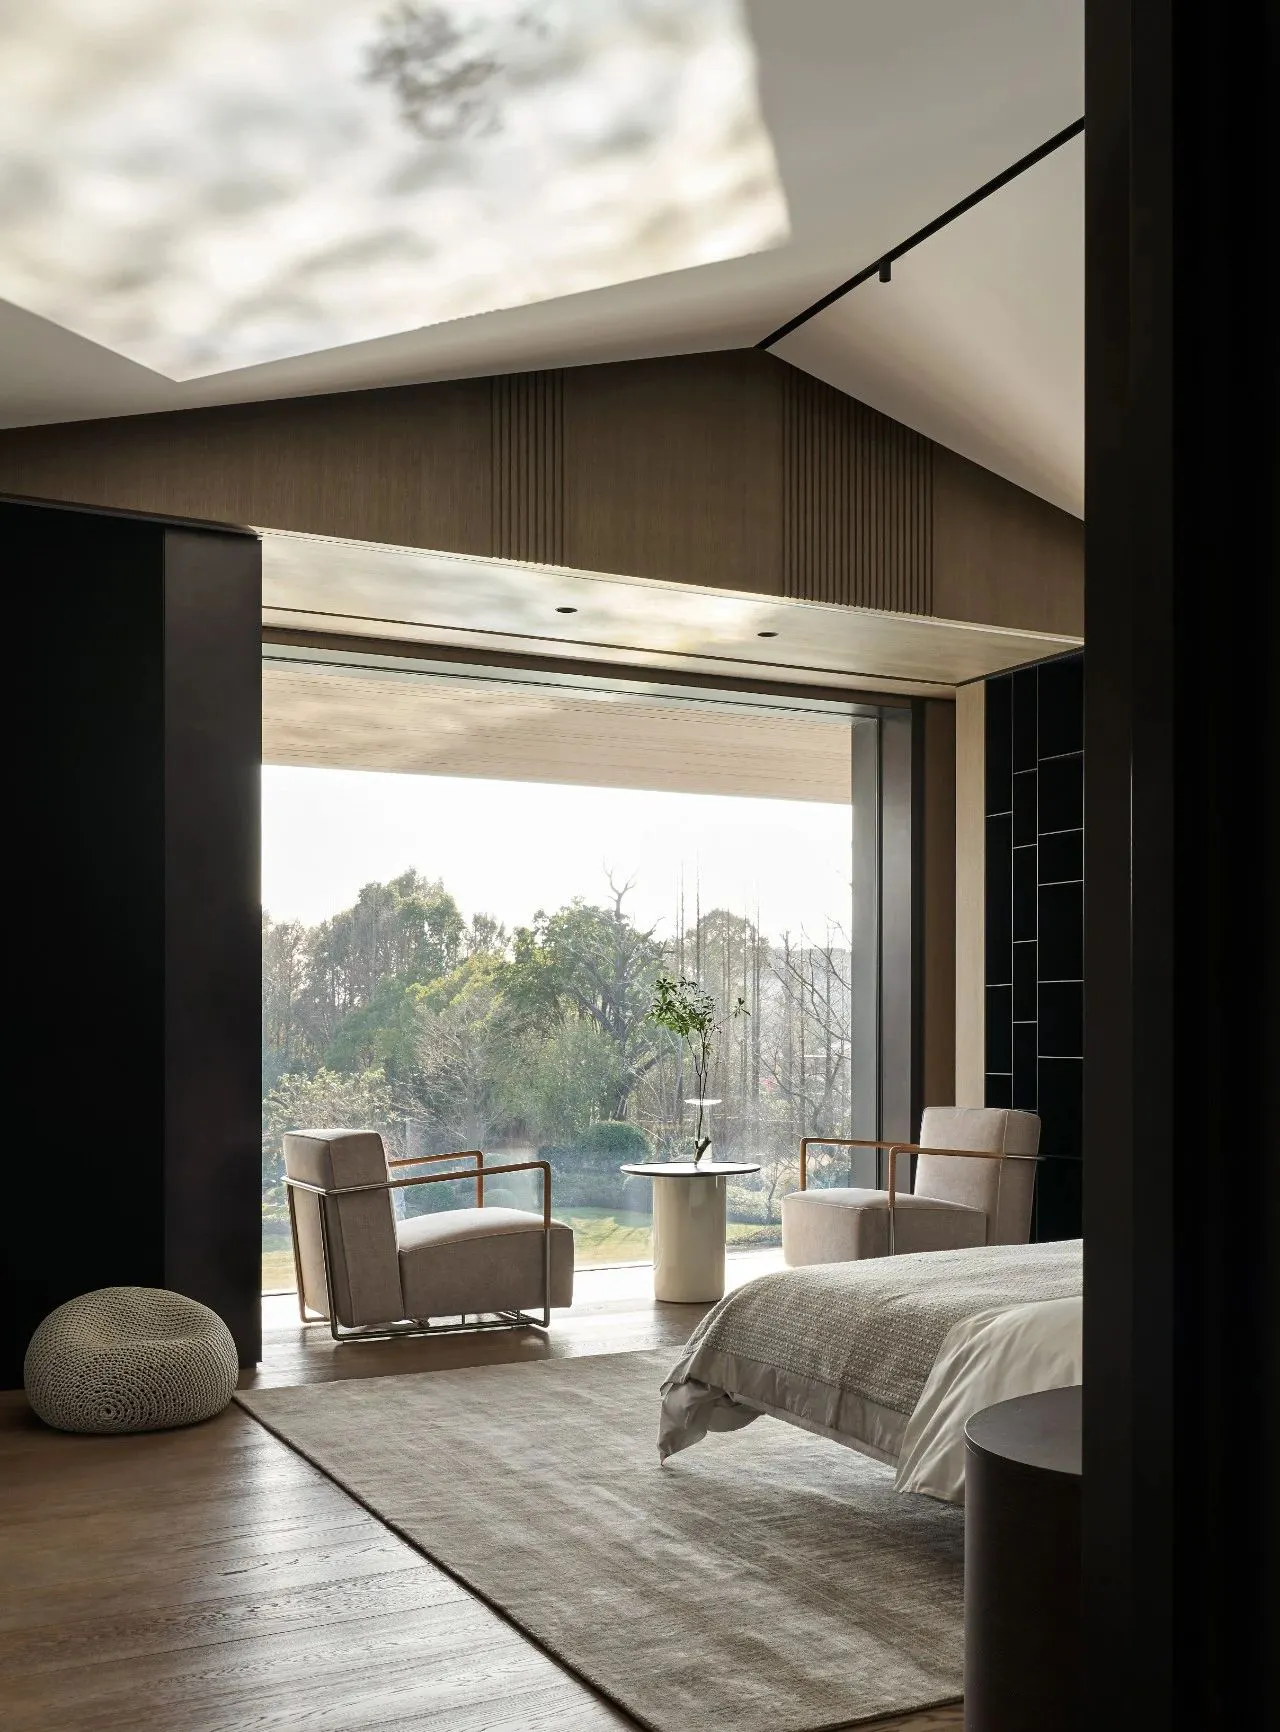 Profesyonel bütün ev lüks ev 3d Max render modelleme hizmetleri Villa otel ev dekor dış ve iç tasarım